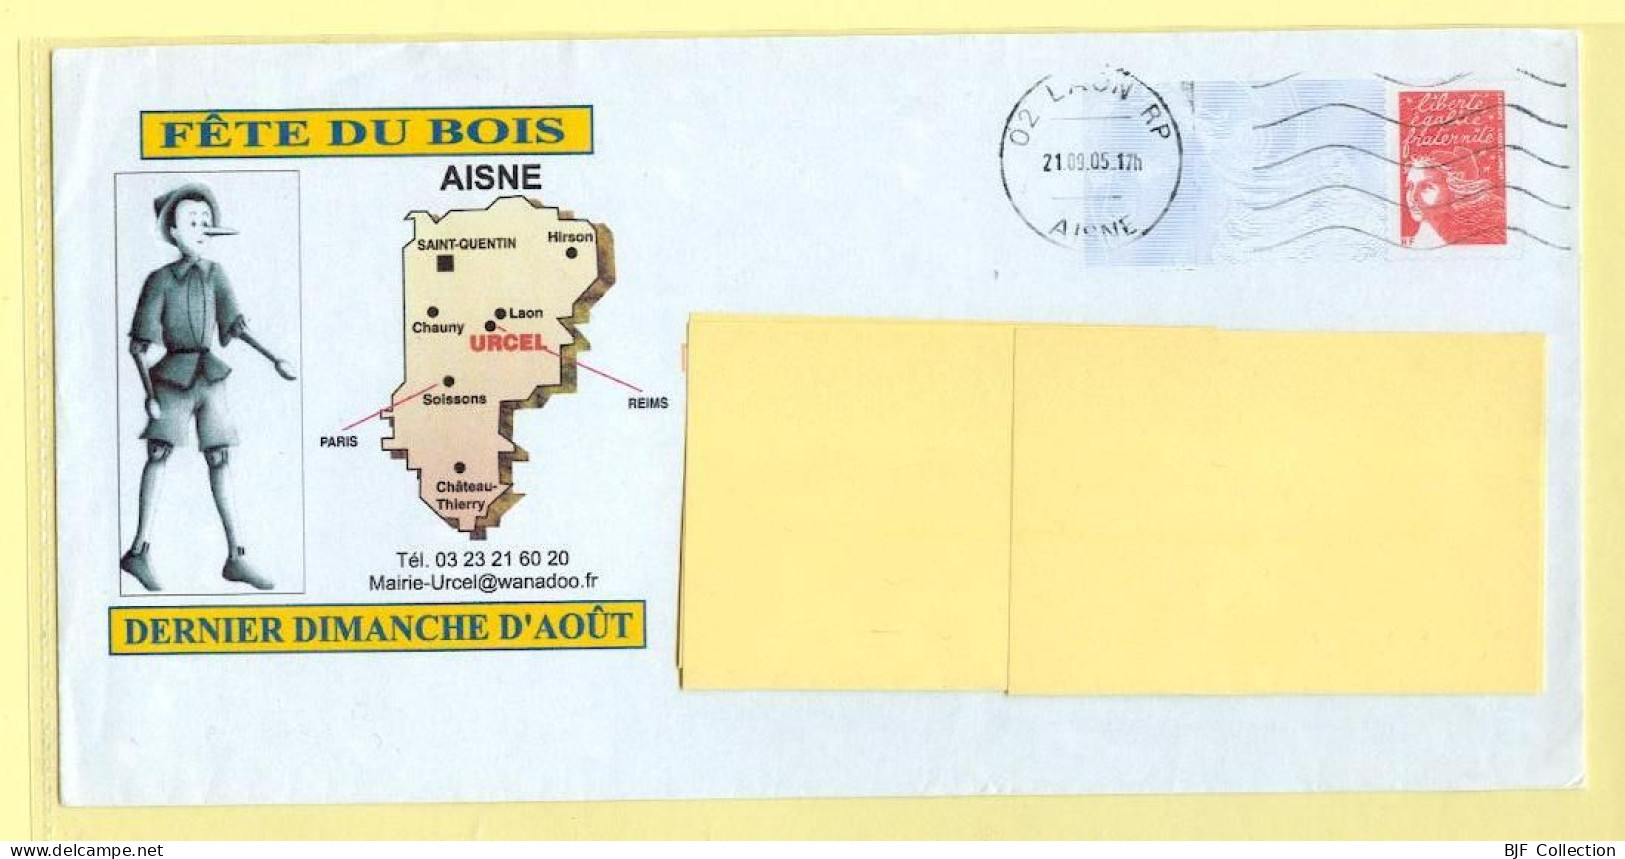 PAP Marianne De Luquet – URCEL (02) - FETE DU BOIS (N° 809 – Lot B2J/0306940) – 21/09/2005 - Prêts-à-poster:Overprinting/Luquet